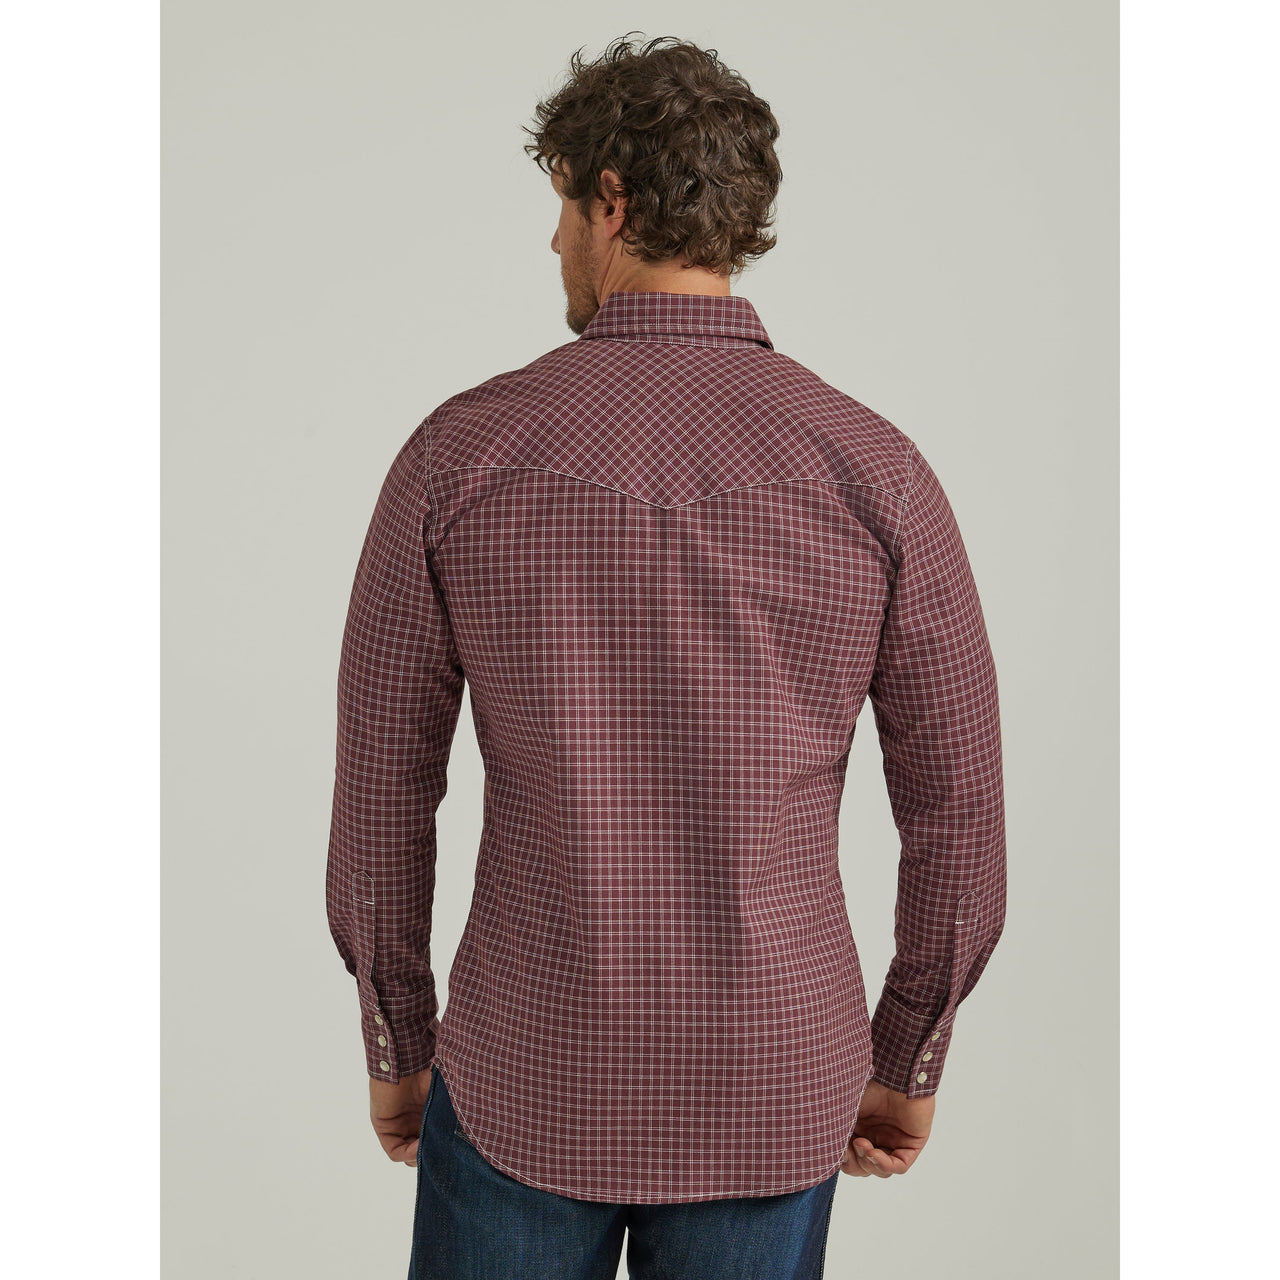 Wrangler Men's Flame Resistant Long Sleeve Snap Work Shirt - Burgundy